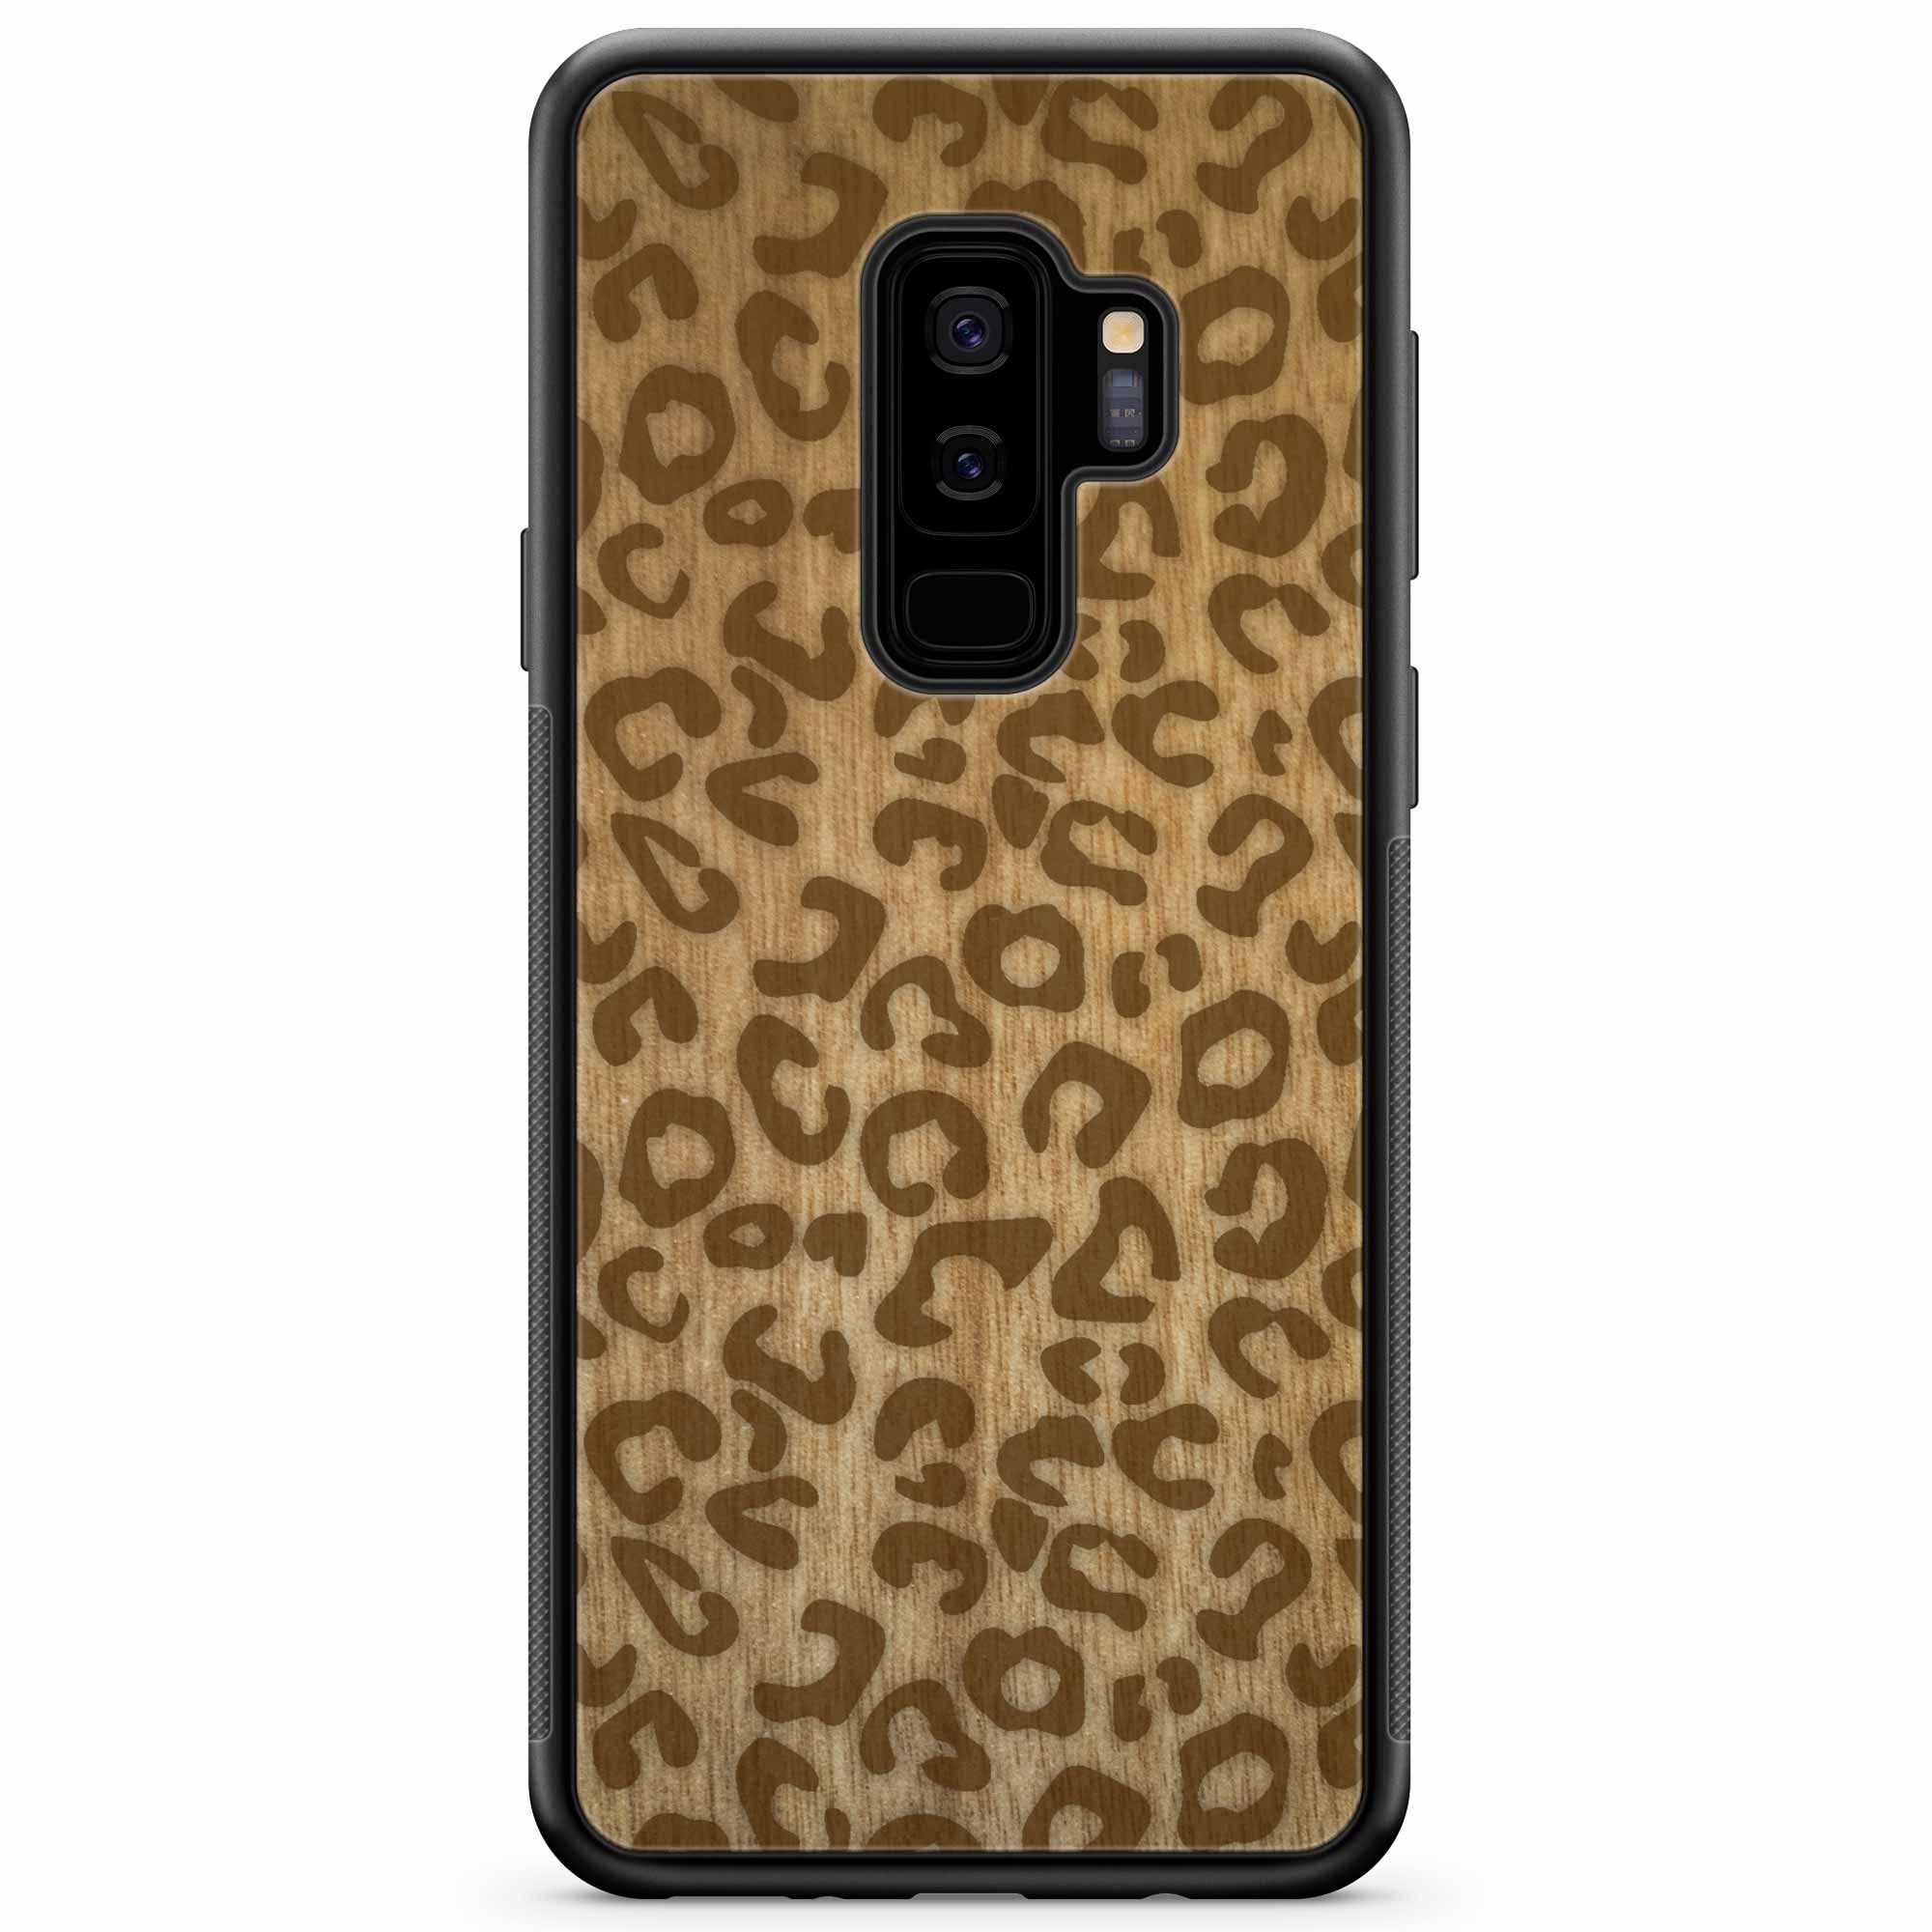 Cheetah Print Samsung S9 Plus Wood Phone Case